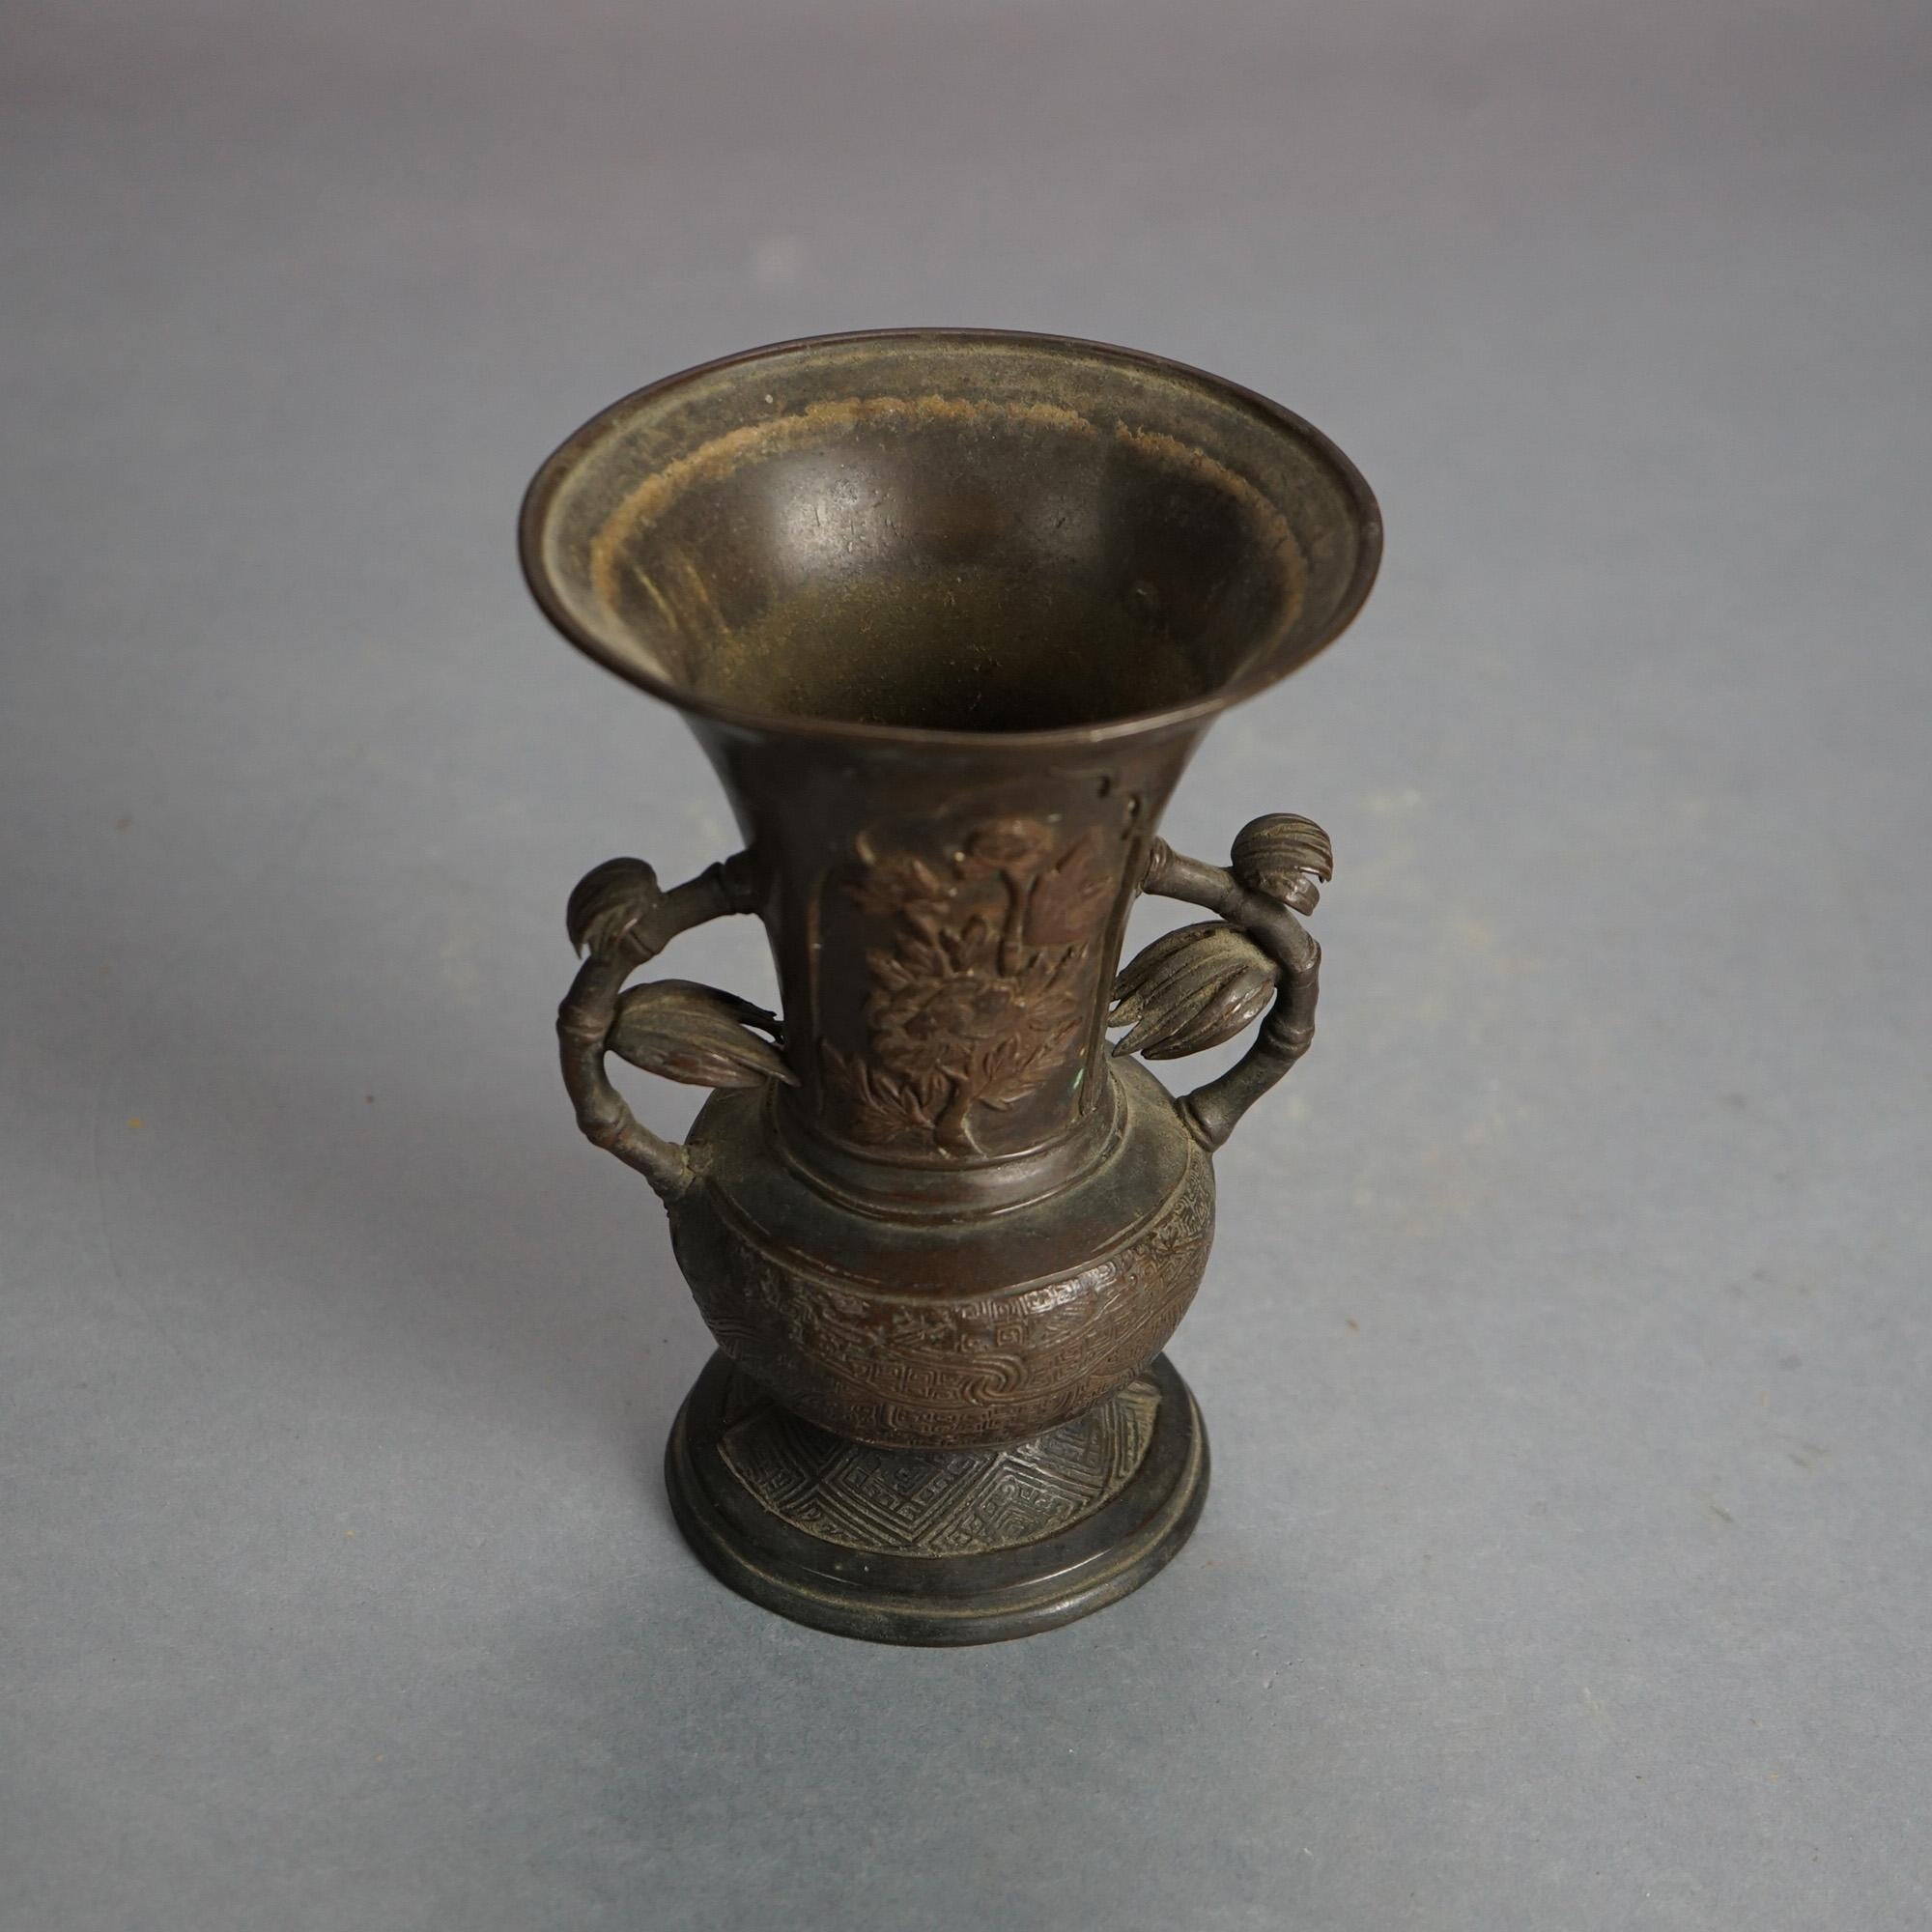 Antike chinesische Gussbronze floral dekoriert Vase mit Branch Form Griffe 18C

Maße - 6,5 